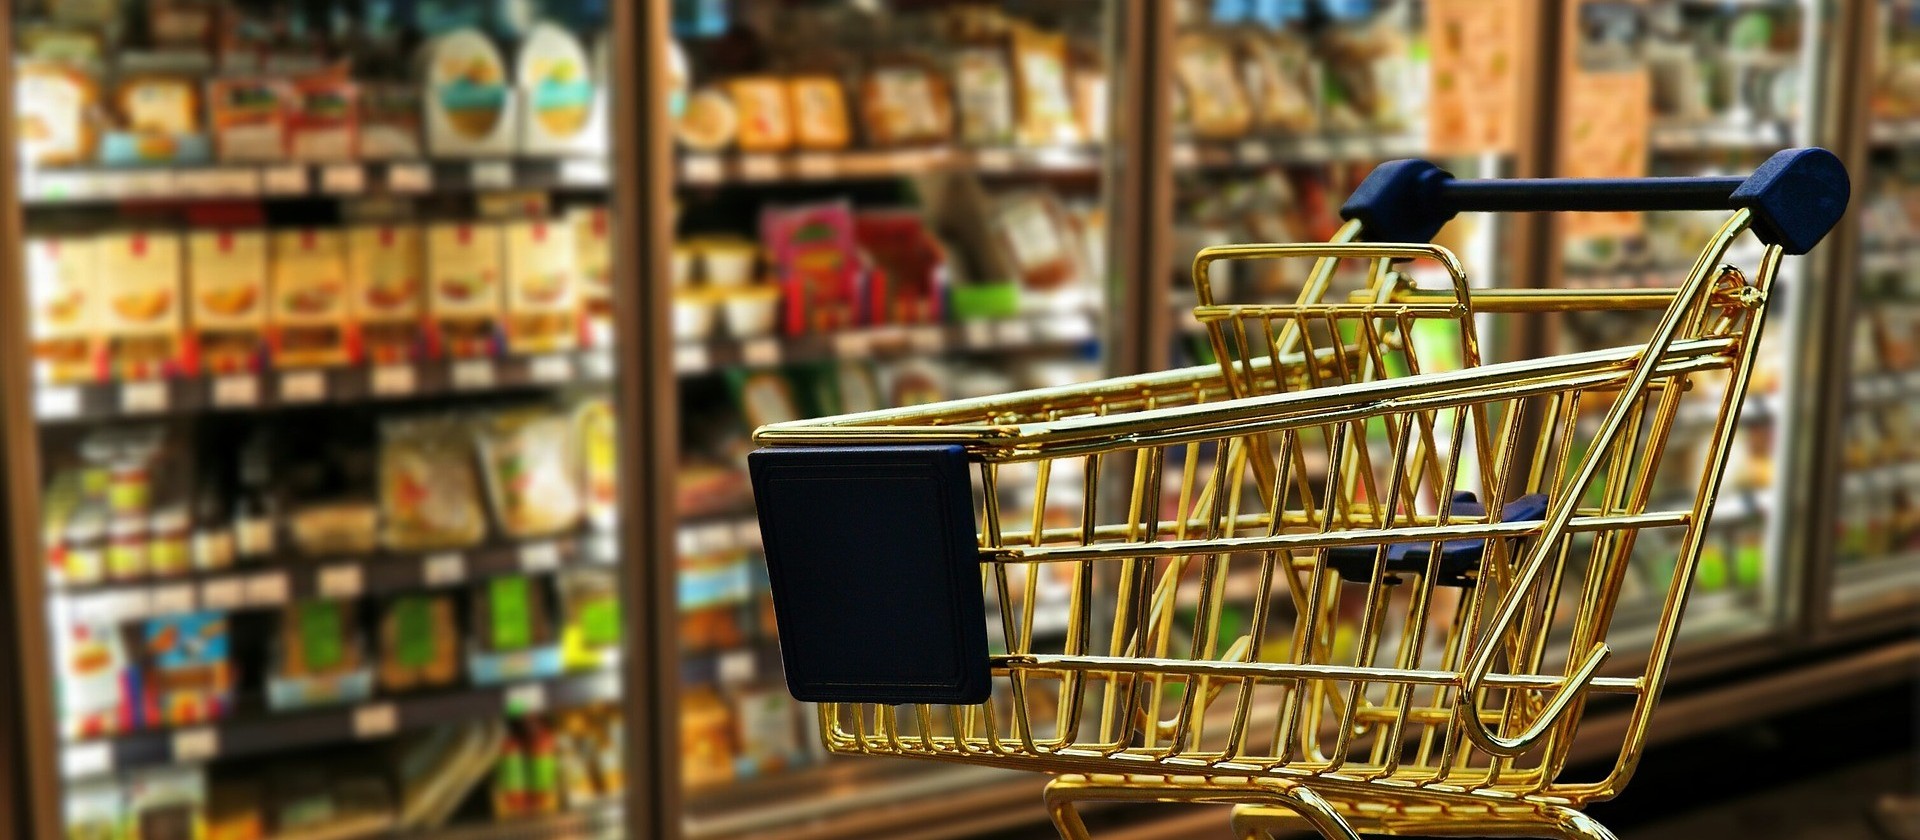 Projeto aprovado pelos vereadores determina informações em braile em supermercados